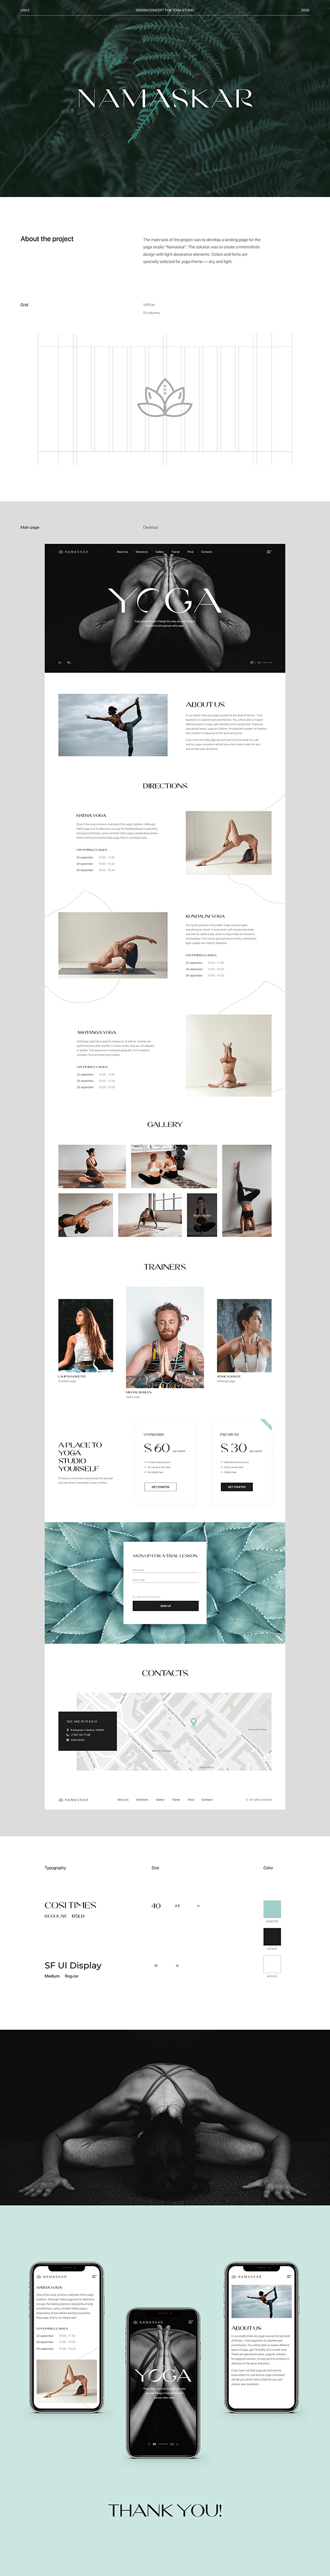 Namaskar — yoga studio